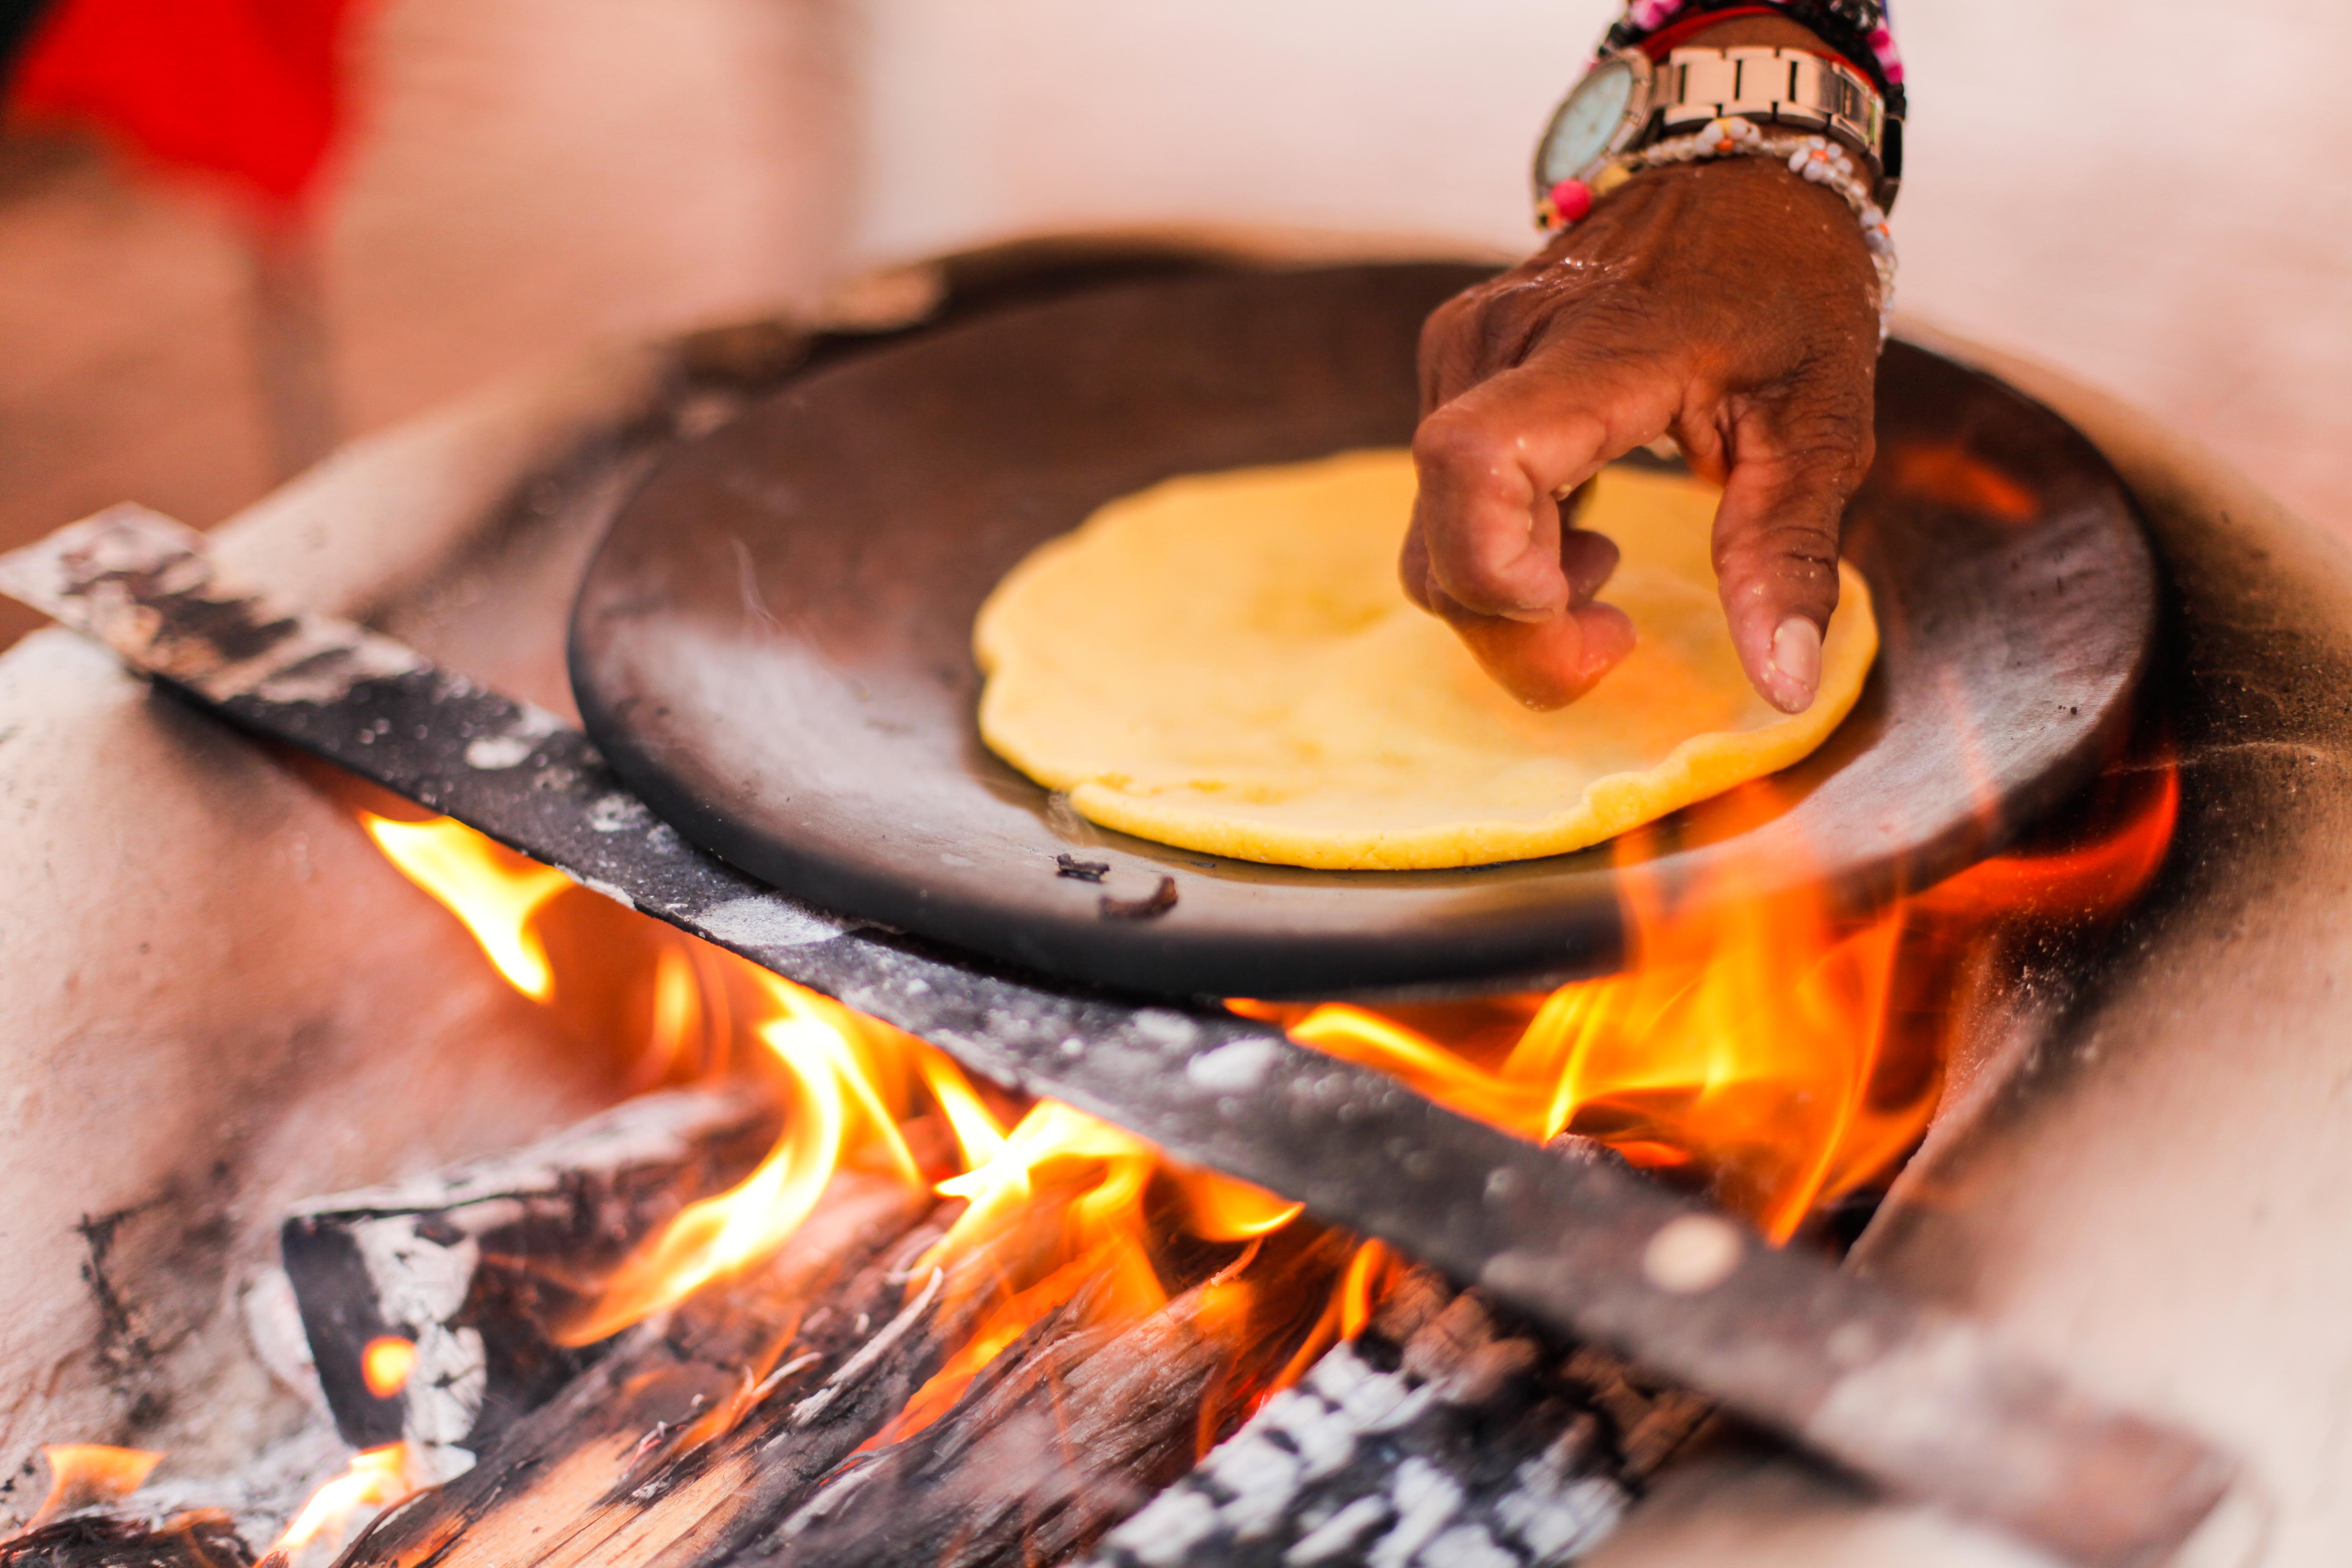 La cocina guanacasteca es una tradiciones más reconocidas en el país, cuyos estudios intentan poner en valor sus aportes culturales y nutricionales.